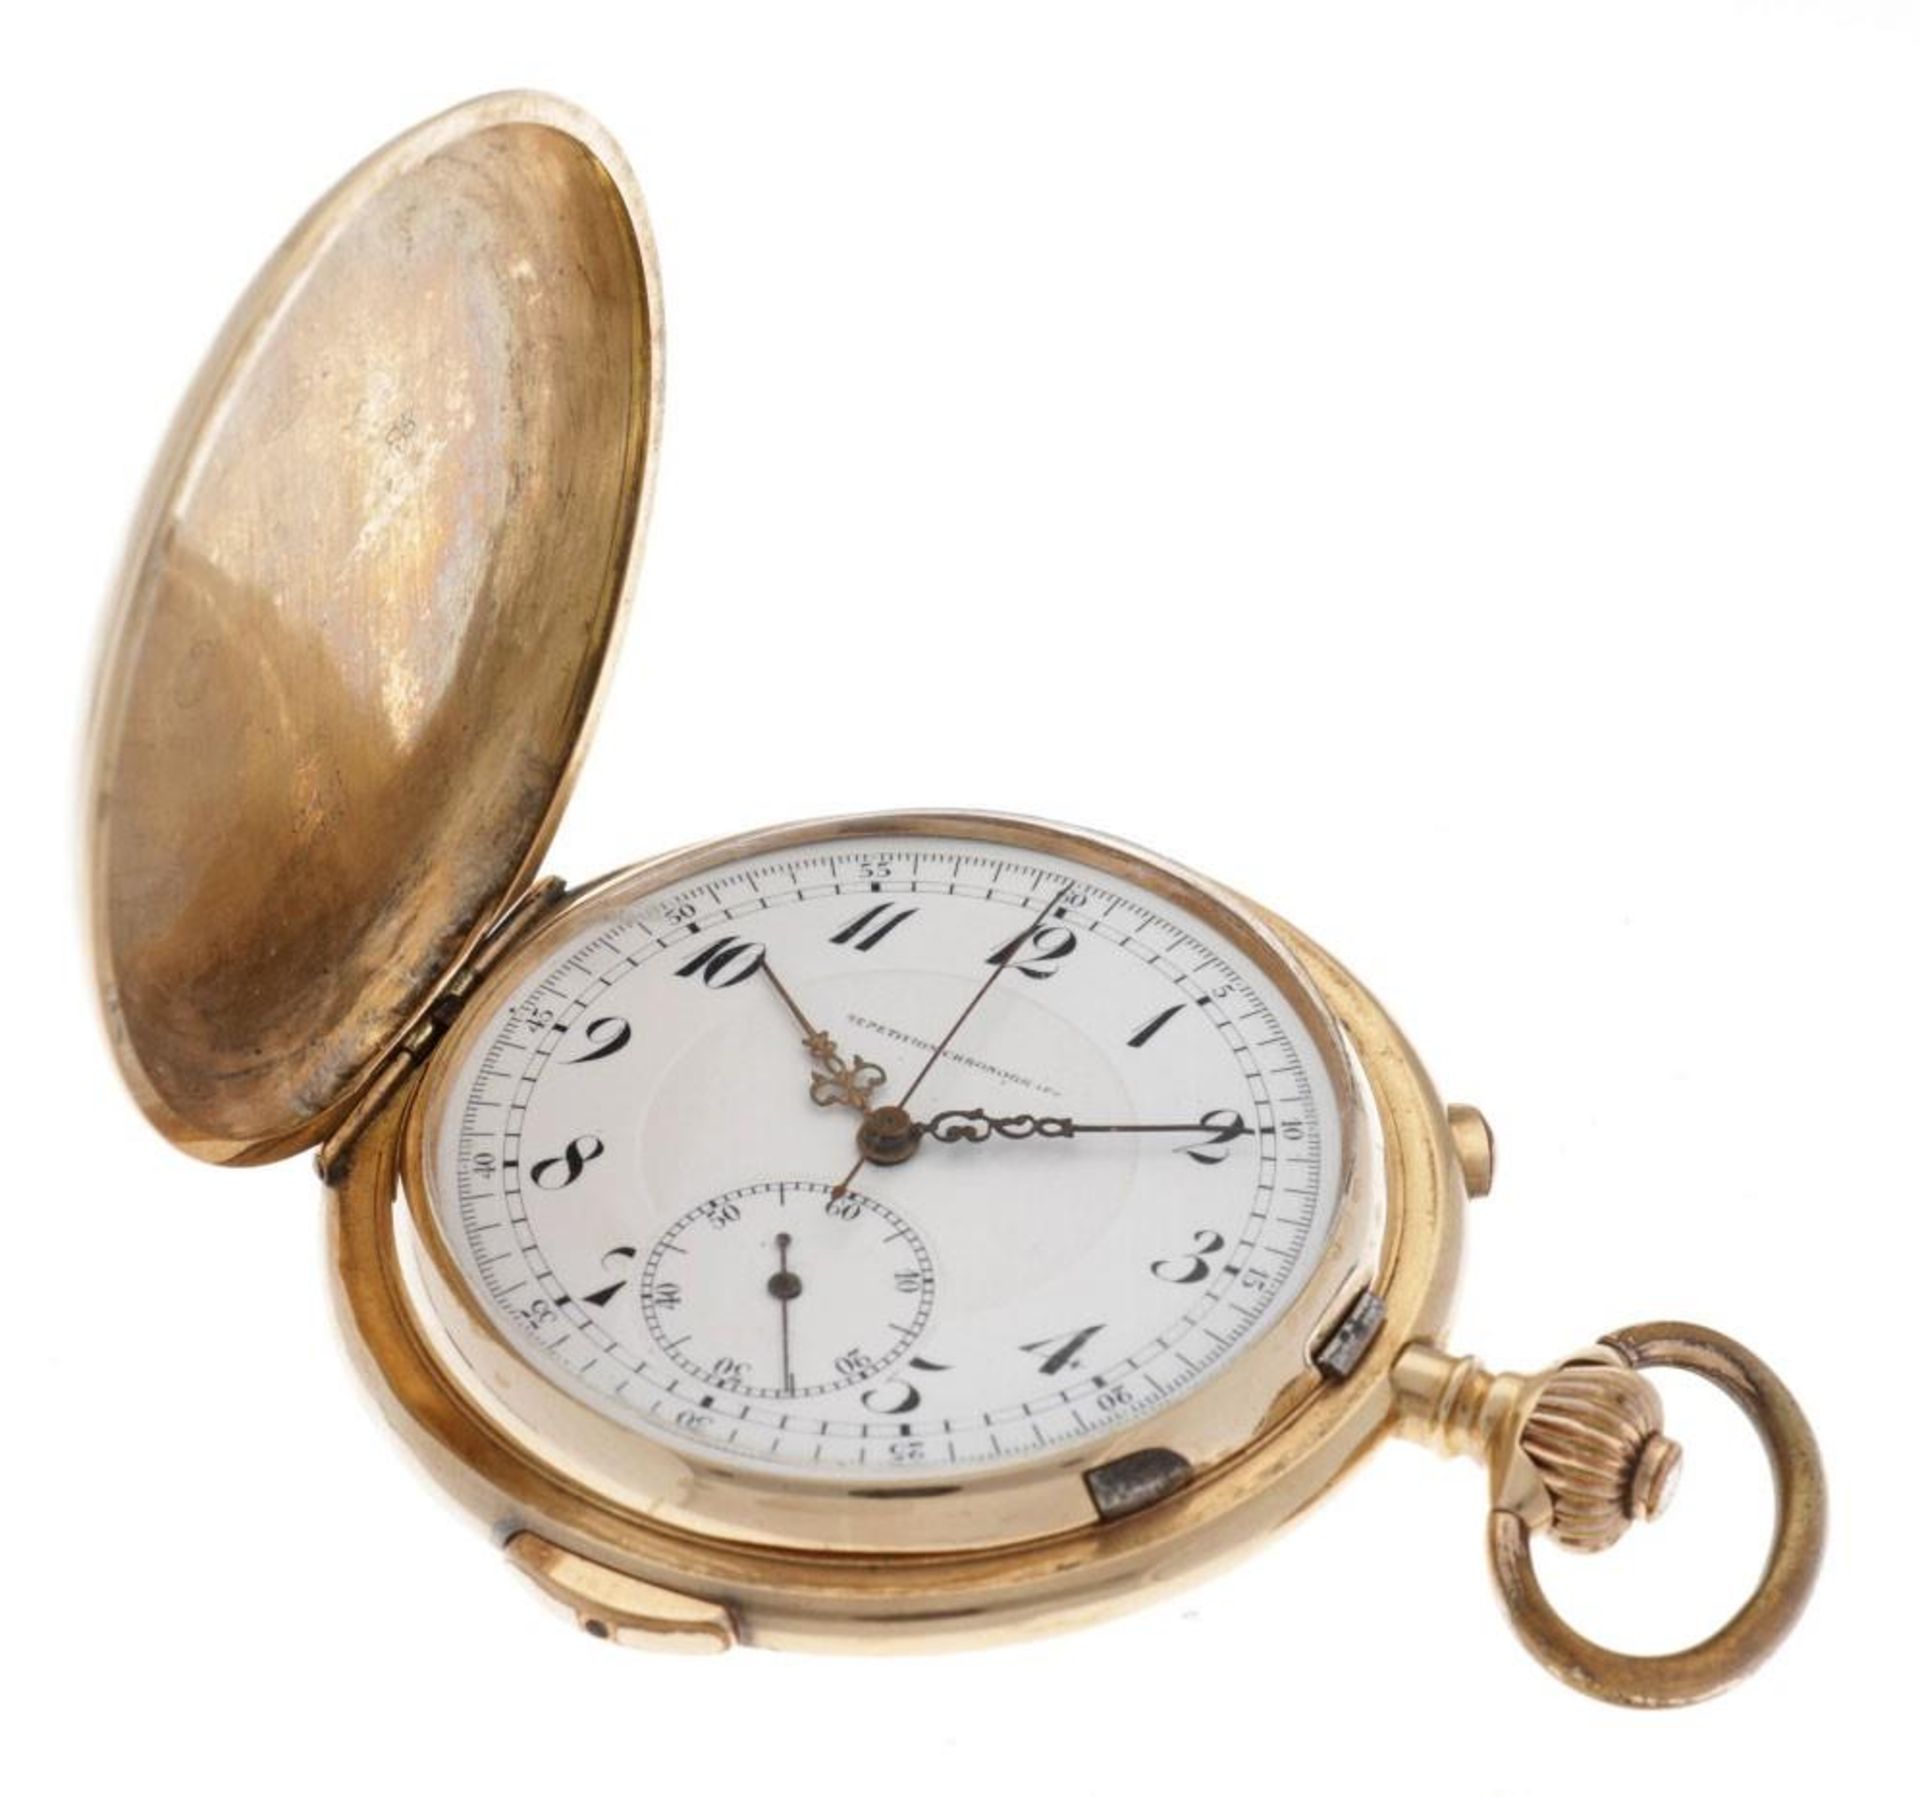 Golden Savonette Chronograph - Men's Pocket Watch - appr. 1889. - Bild 2 aus 7